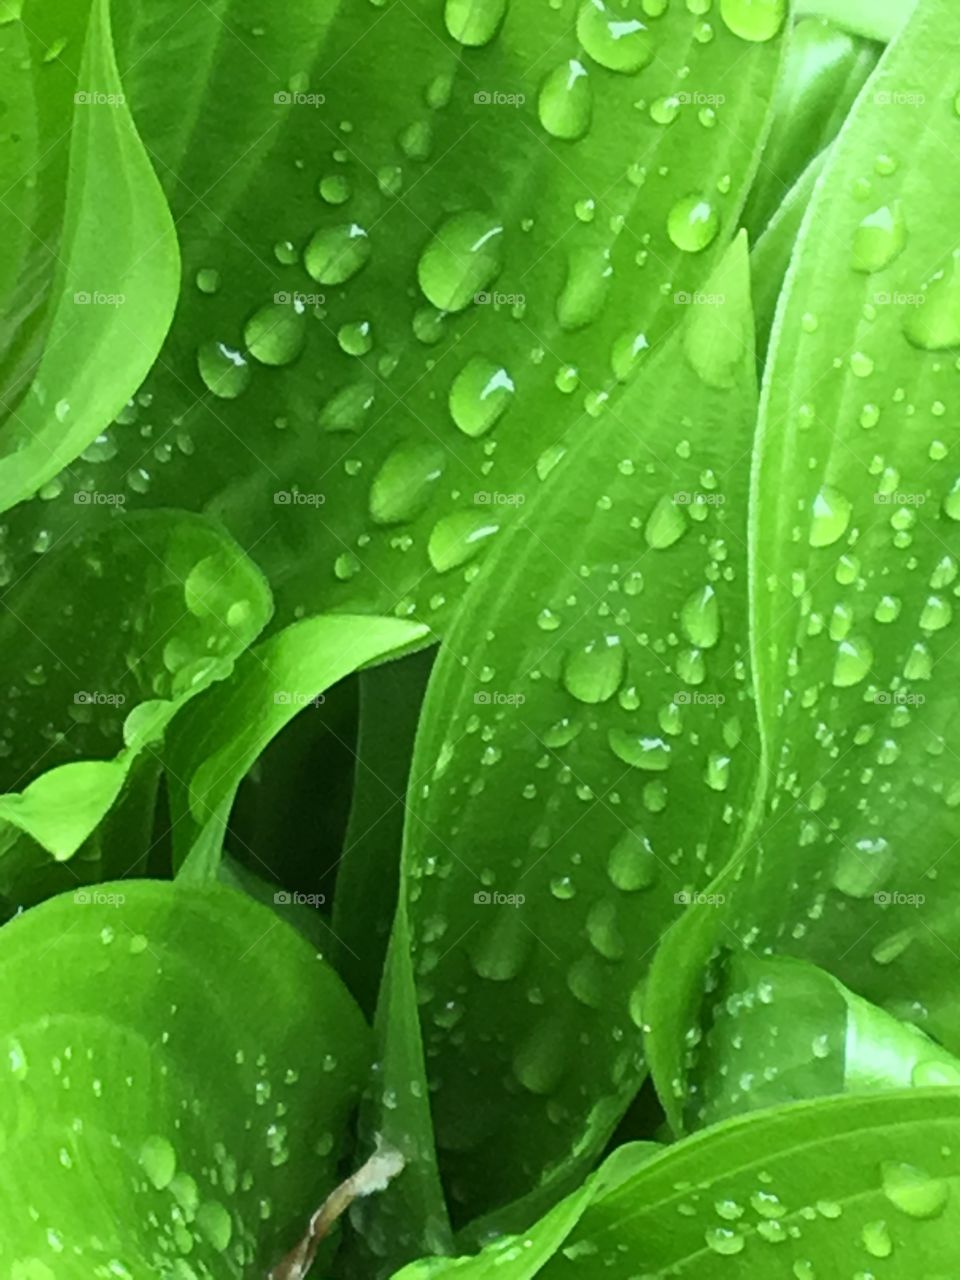 Rain drops on hostas plant